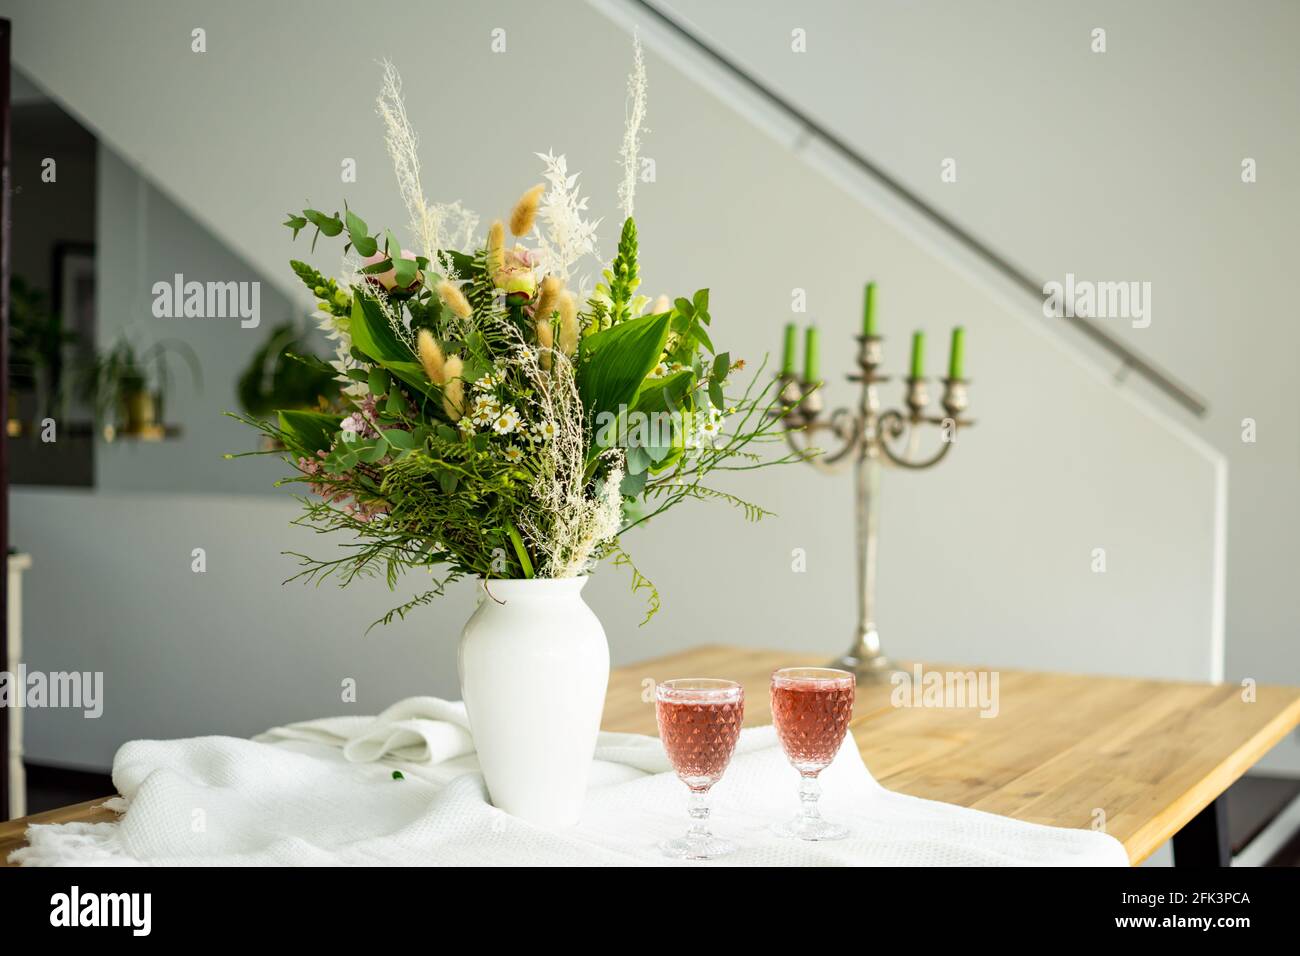 Élégant bouquet de fleurs sur une table accompagné de deux cocktails des gobelets dans une maison moderne et spacieuse Banque D'Images